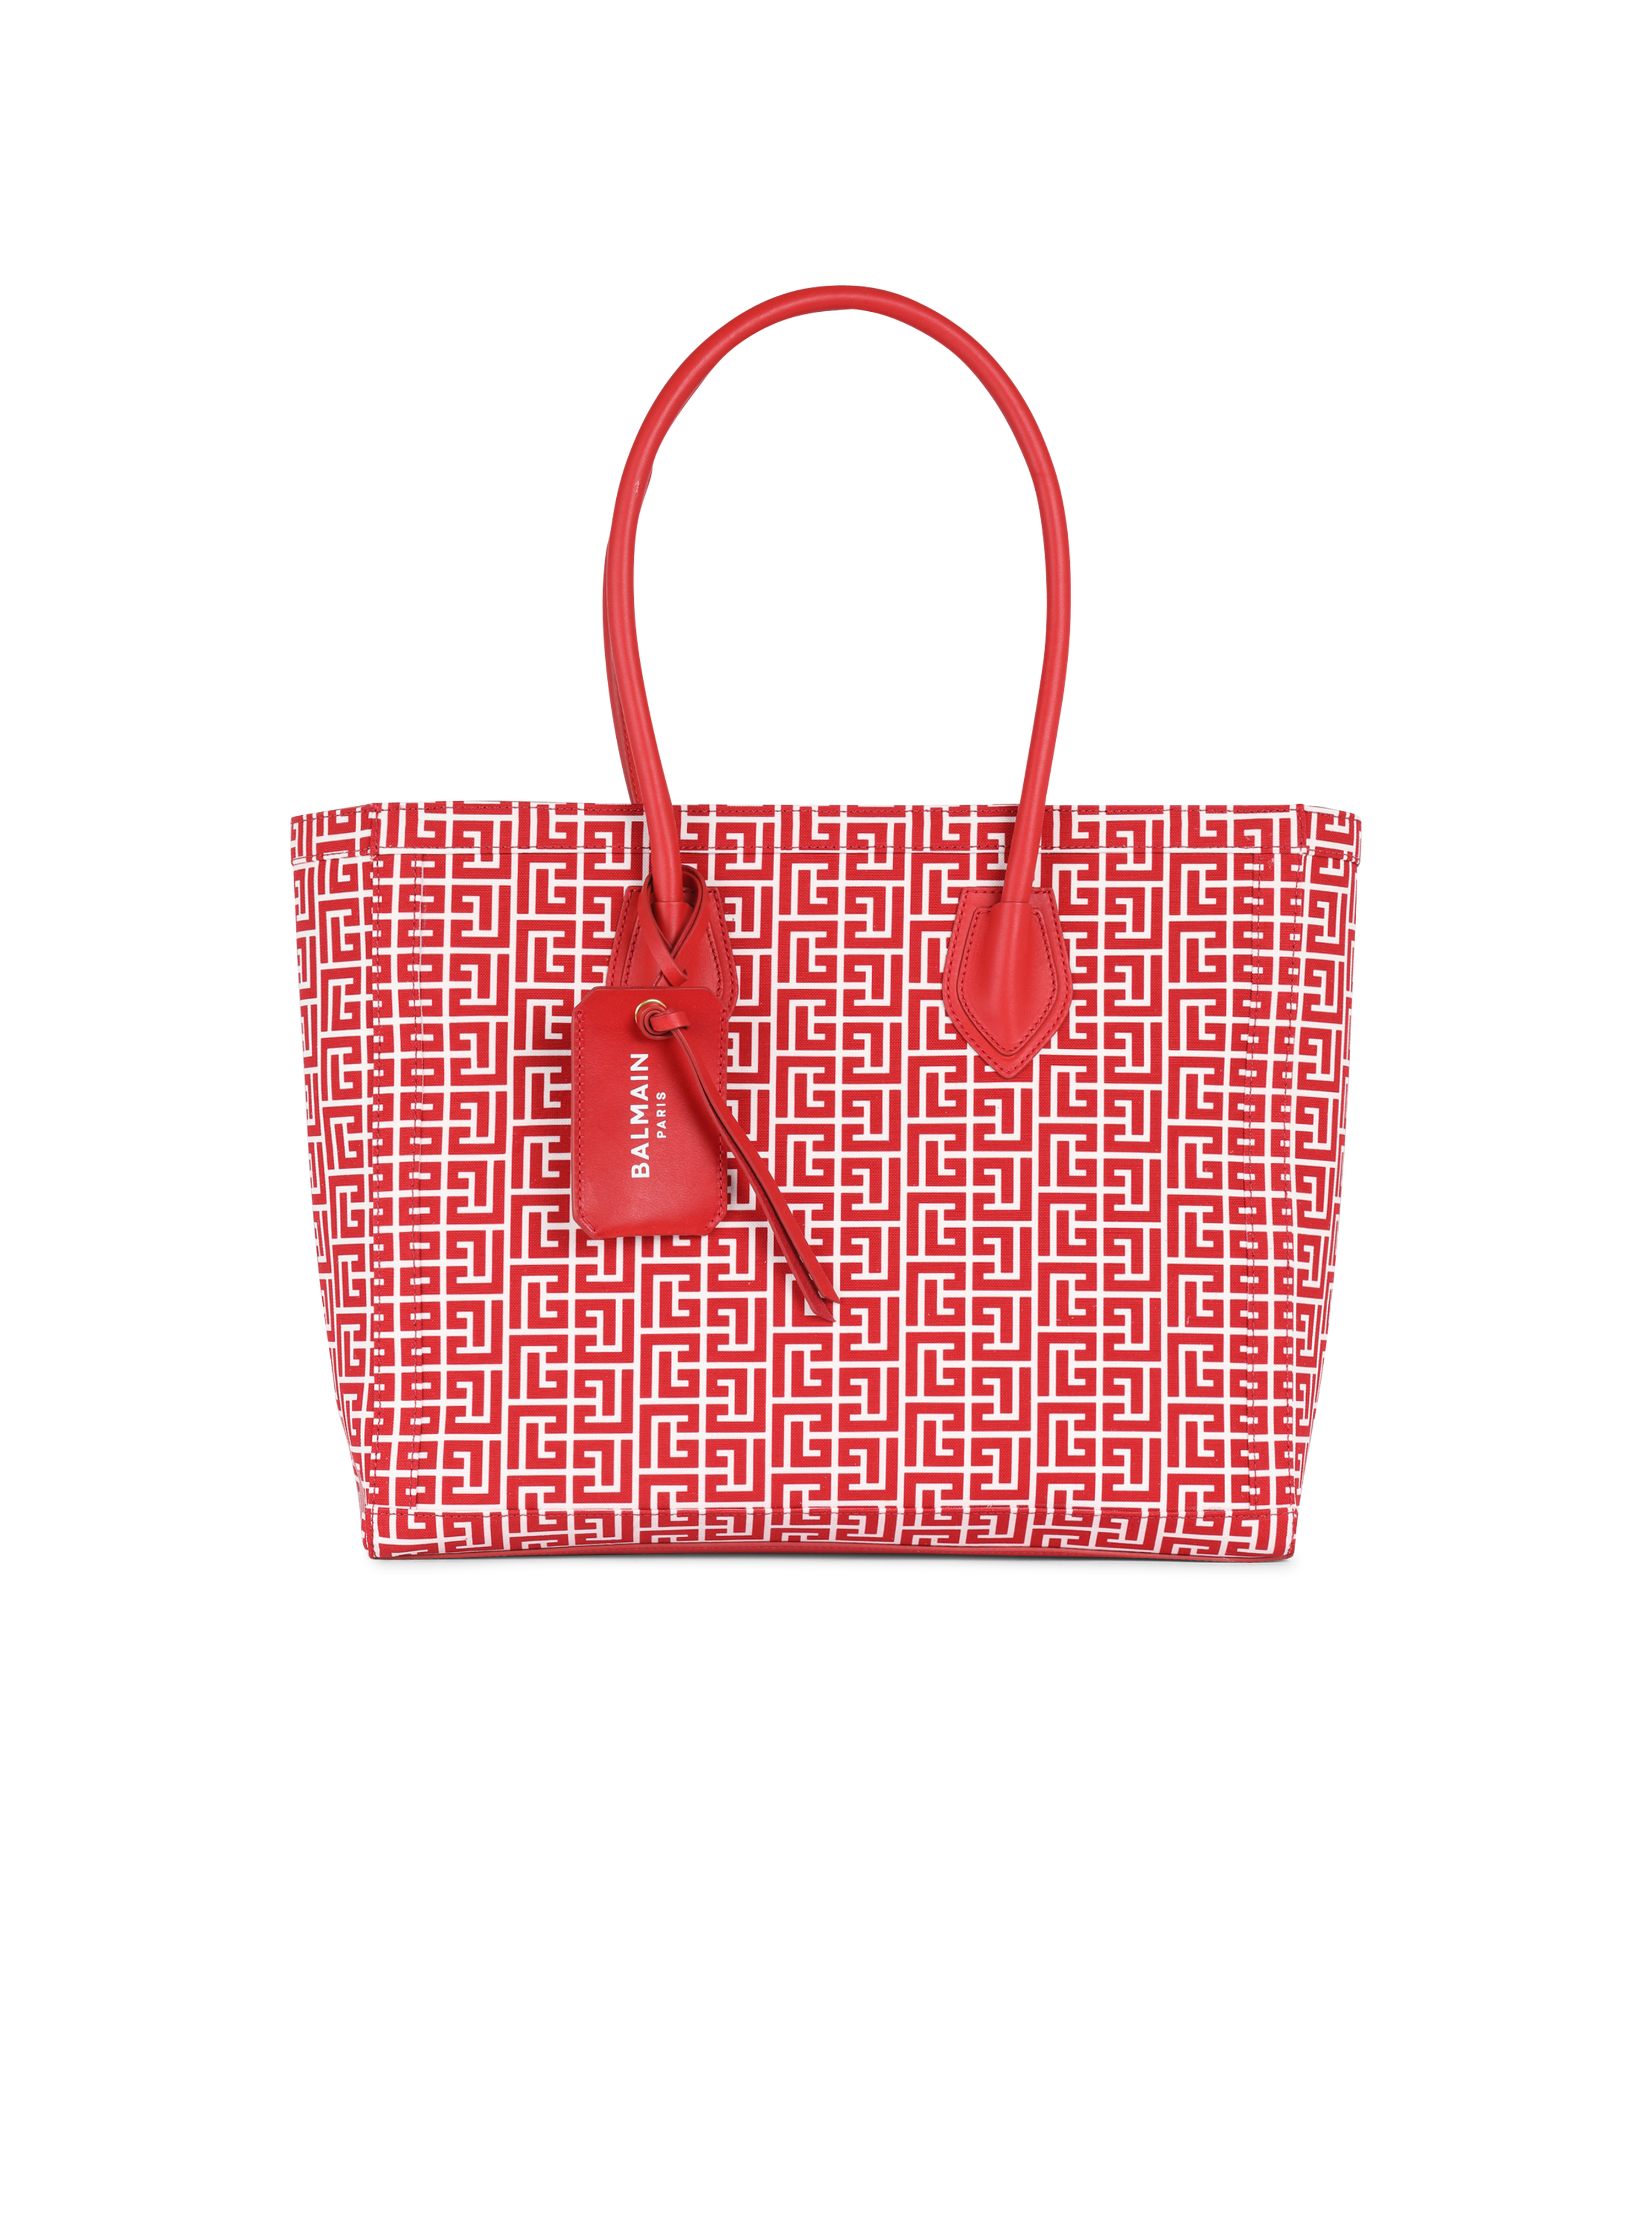 Tote bag B-Army 42 in tela con monogramma, rosso